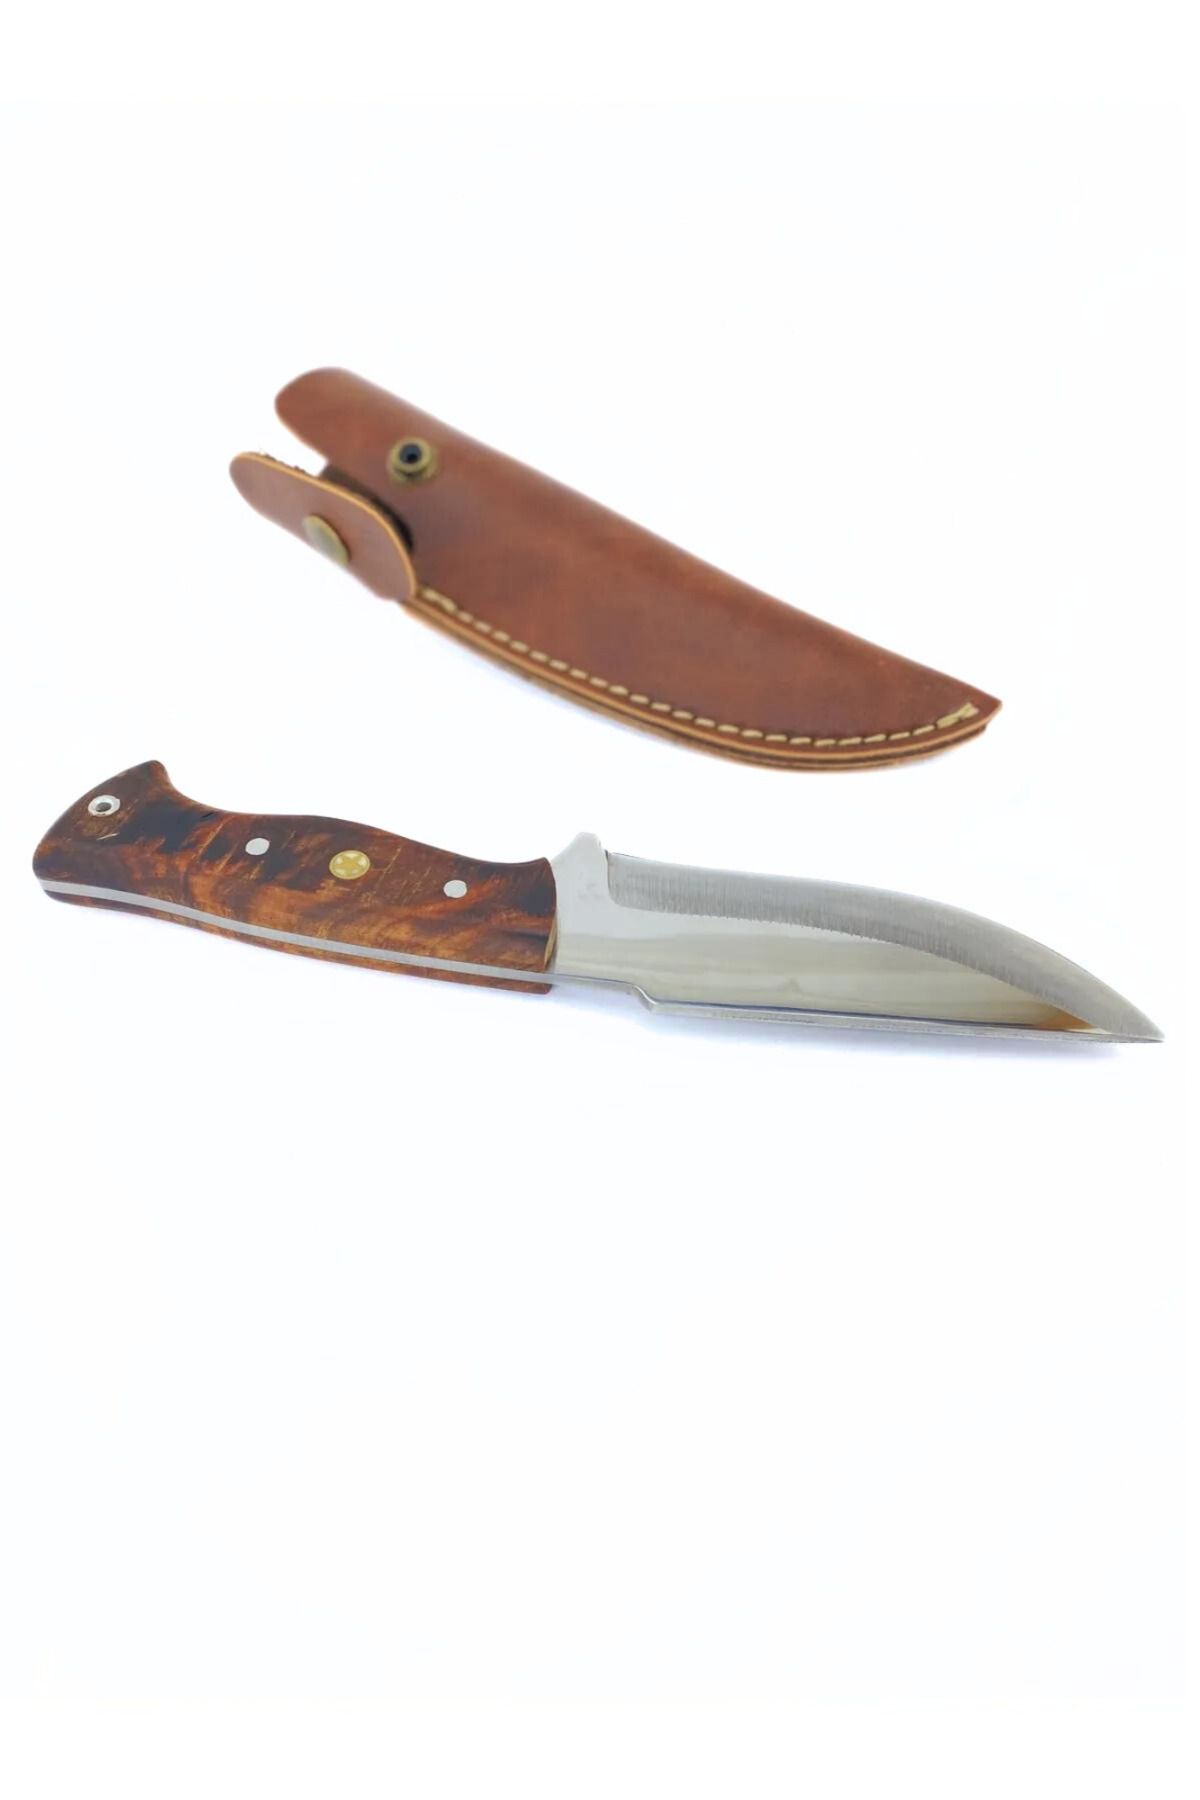 ALPHAS BUSHCRAFT Kamp Outdoor Bıçağı, 4034 Alman Serisi Paslanmaz Çelik , Özel Deri Kılıf Hediye